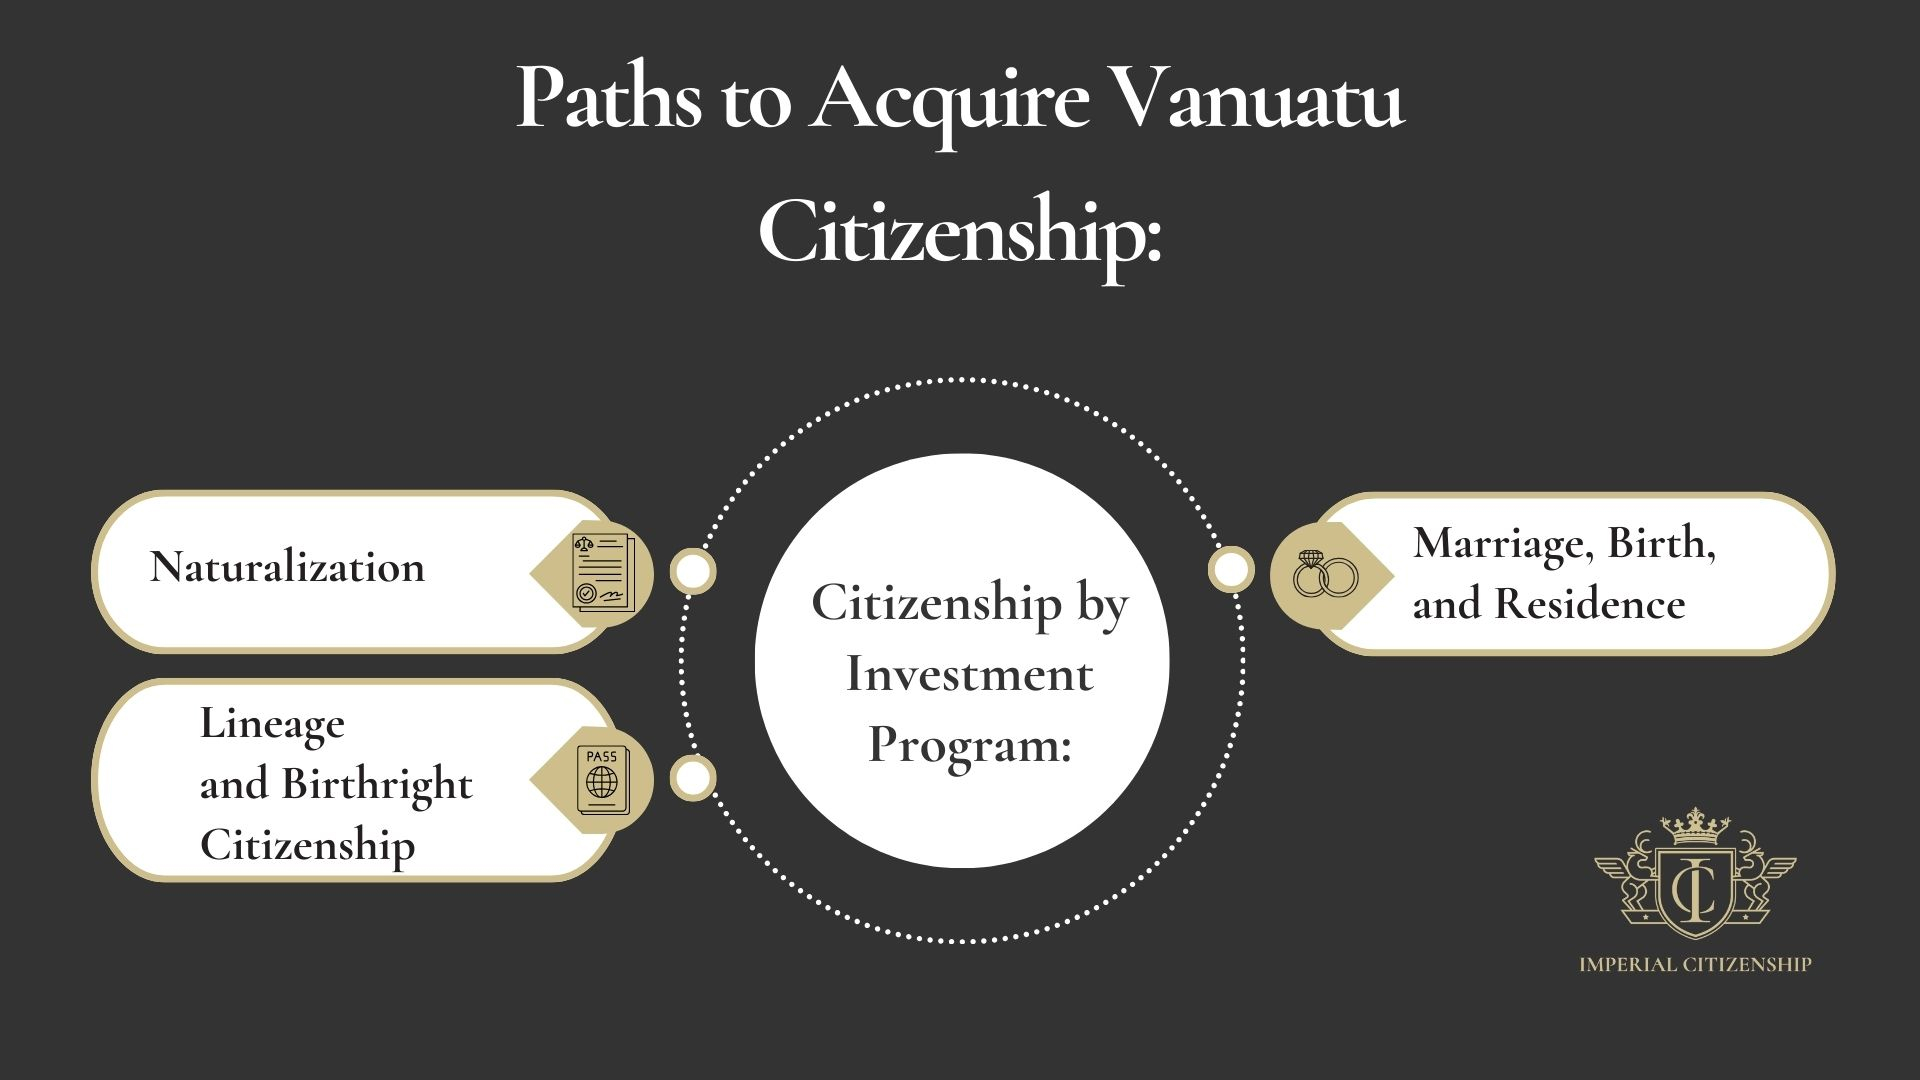 Paths to Acquire Vanuatu Citizenship